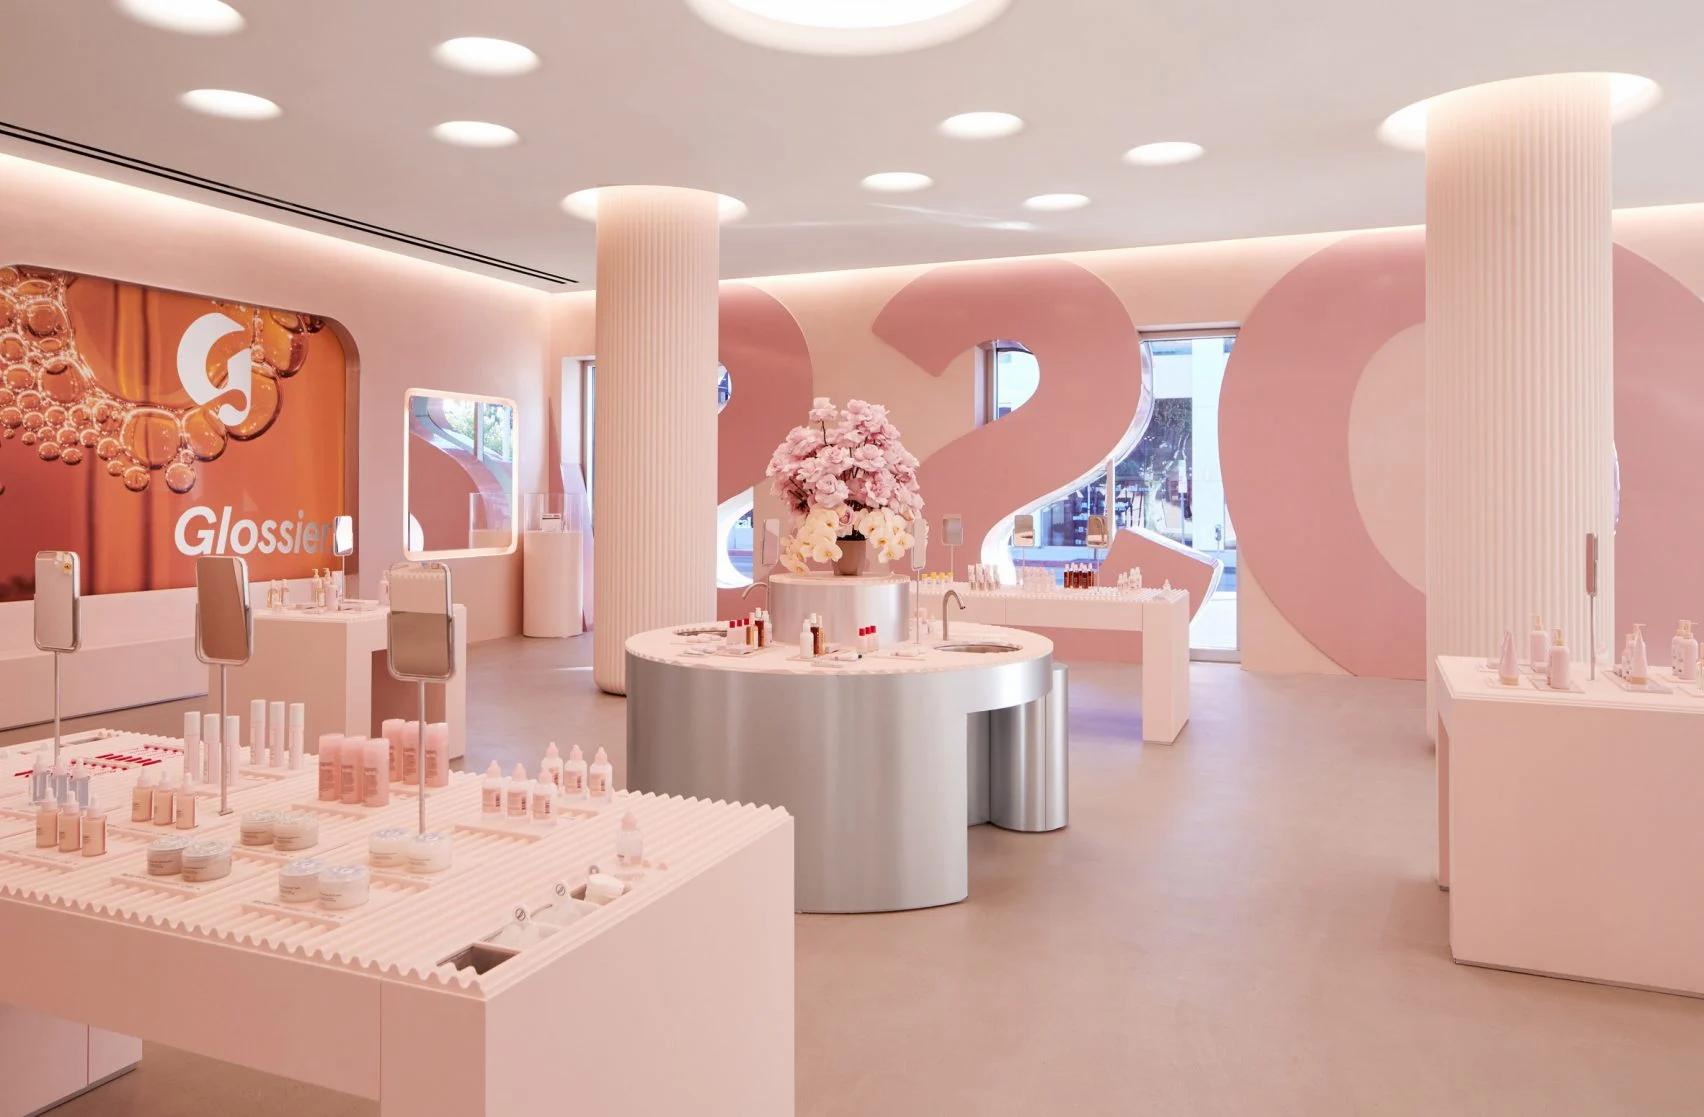 Nội thất của cửa hàng cũng được trang trí với tone màu hồng phấn, tạo nên nét đặc trưng khó có thể lẫn nhầm.